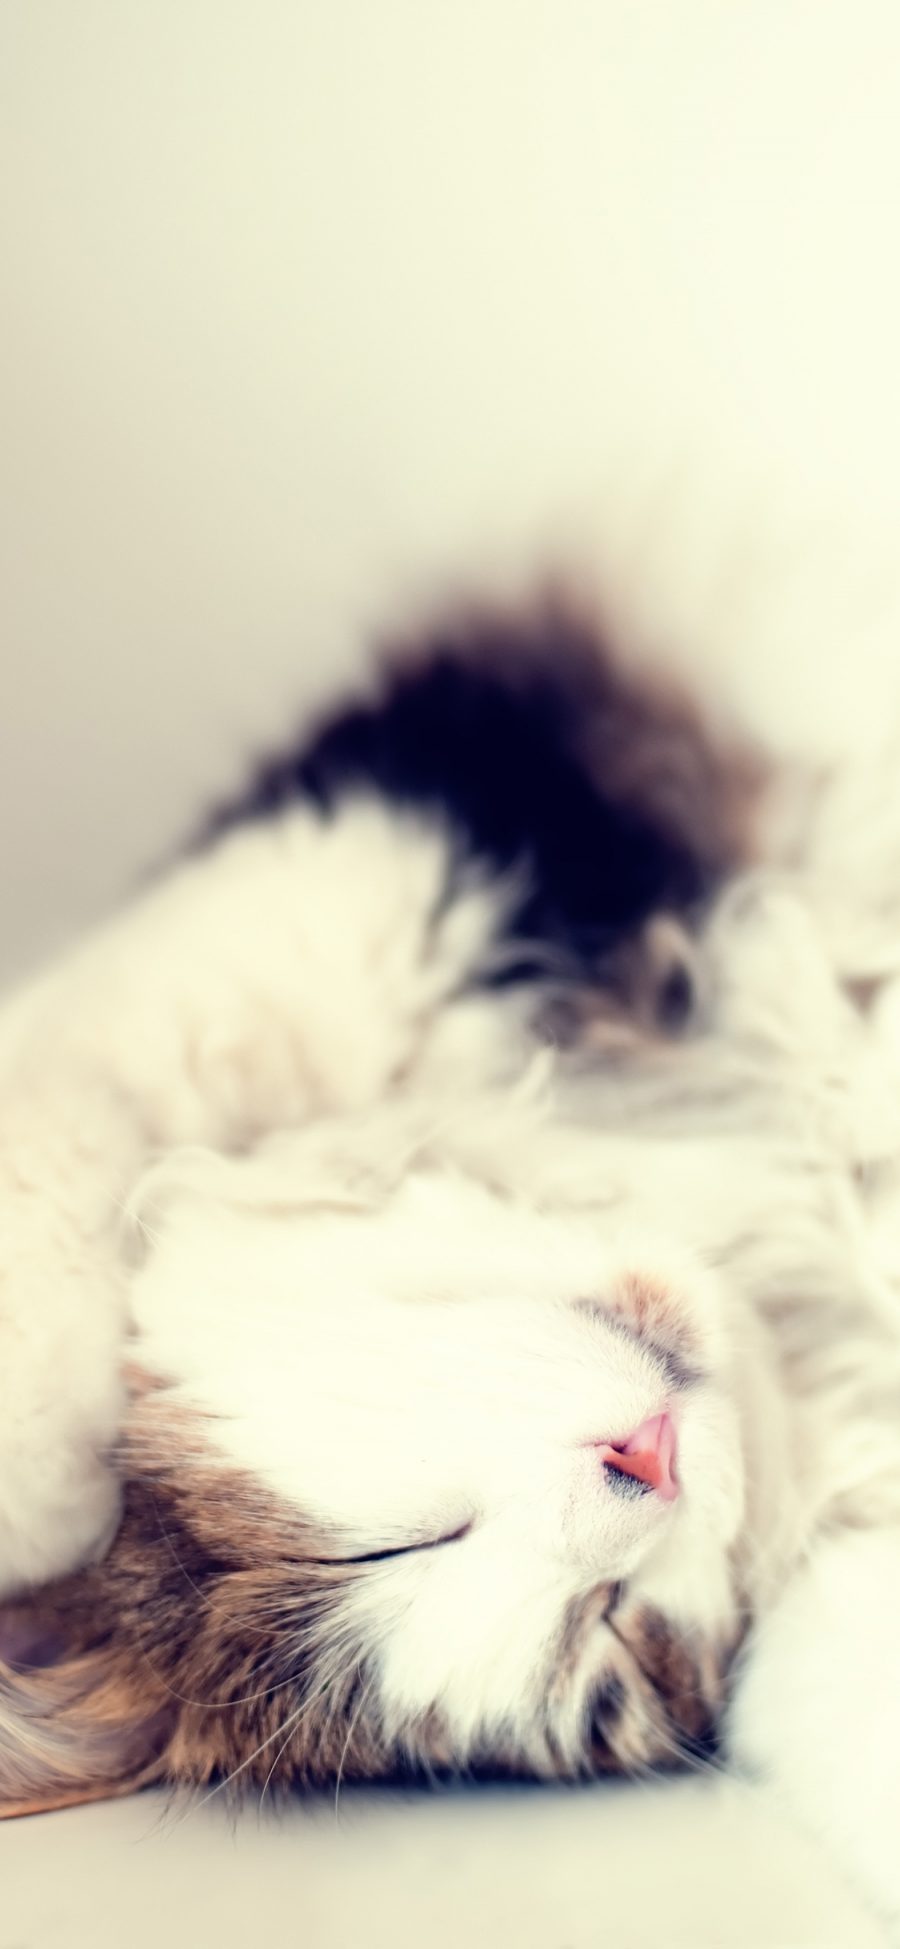 [2436×1125]猫咪 宠物 可爱 水面 睡眠 苹果手机壁纸图片